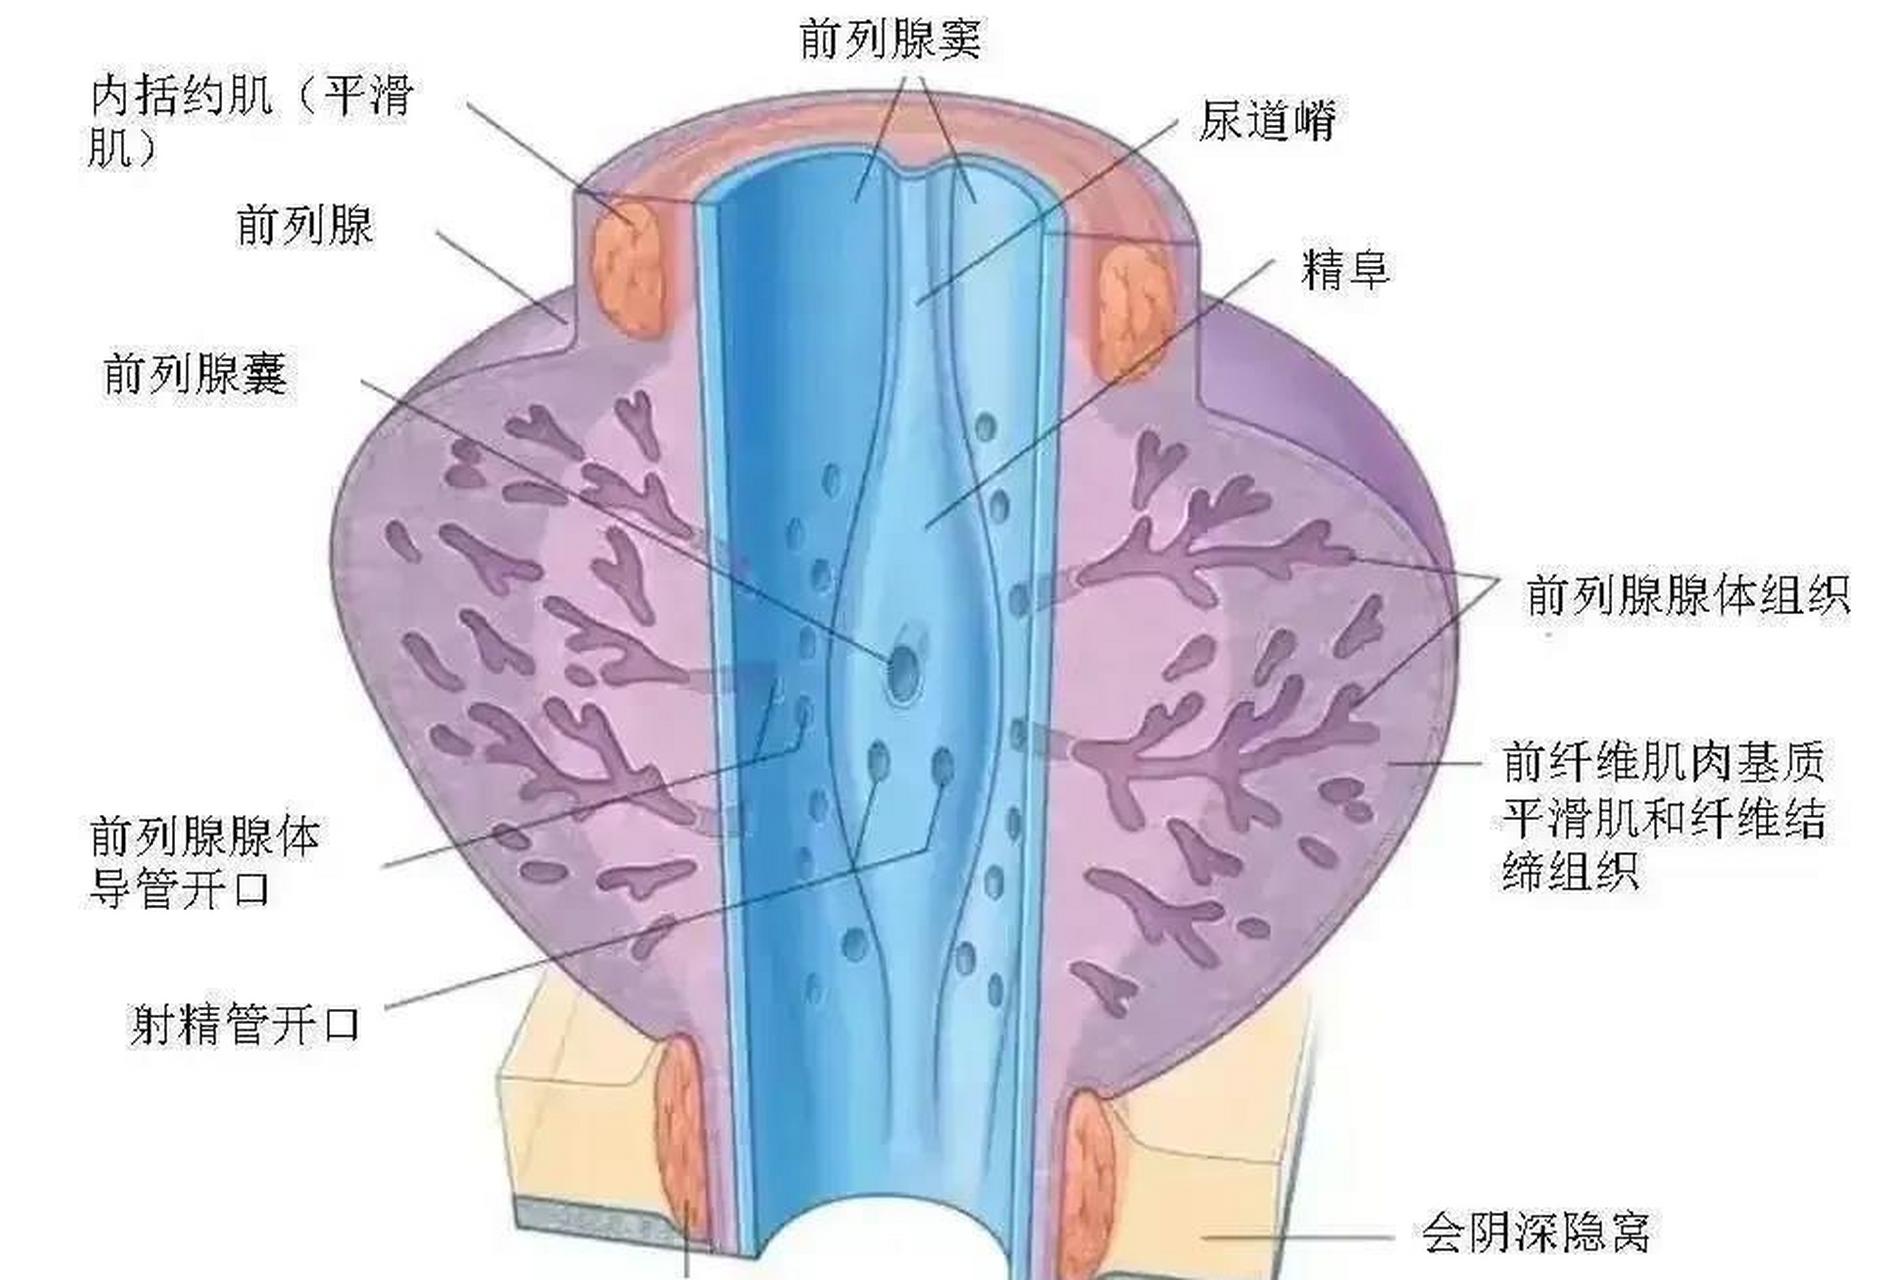 从解剖结构上看,小腺管口堵塞后,腺管肿大,压迫神经,造成会阴部胀痛不